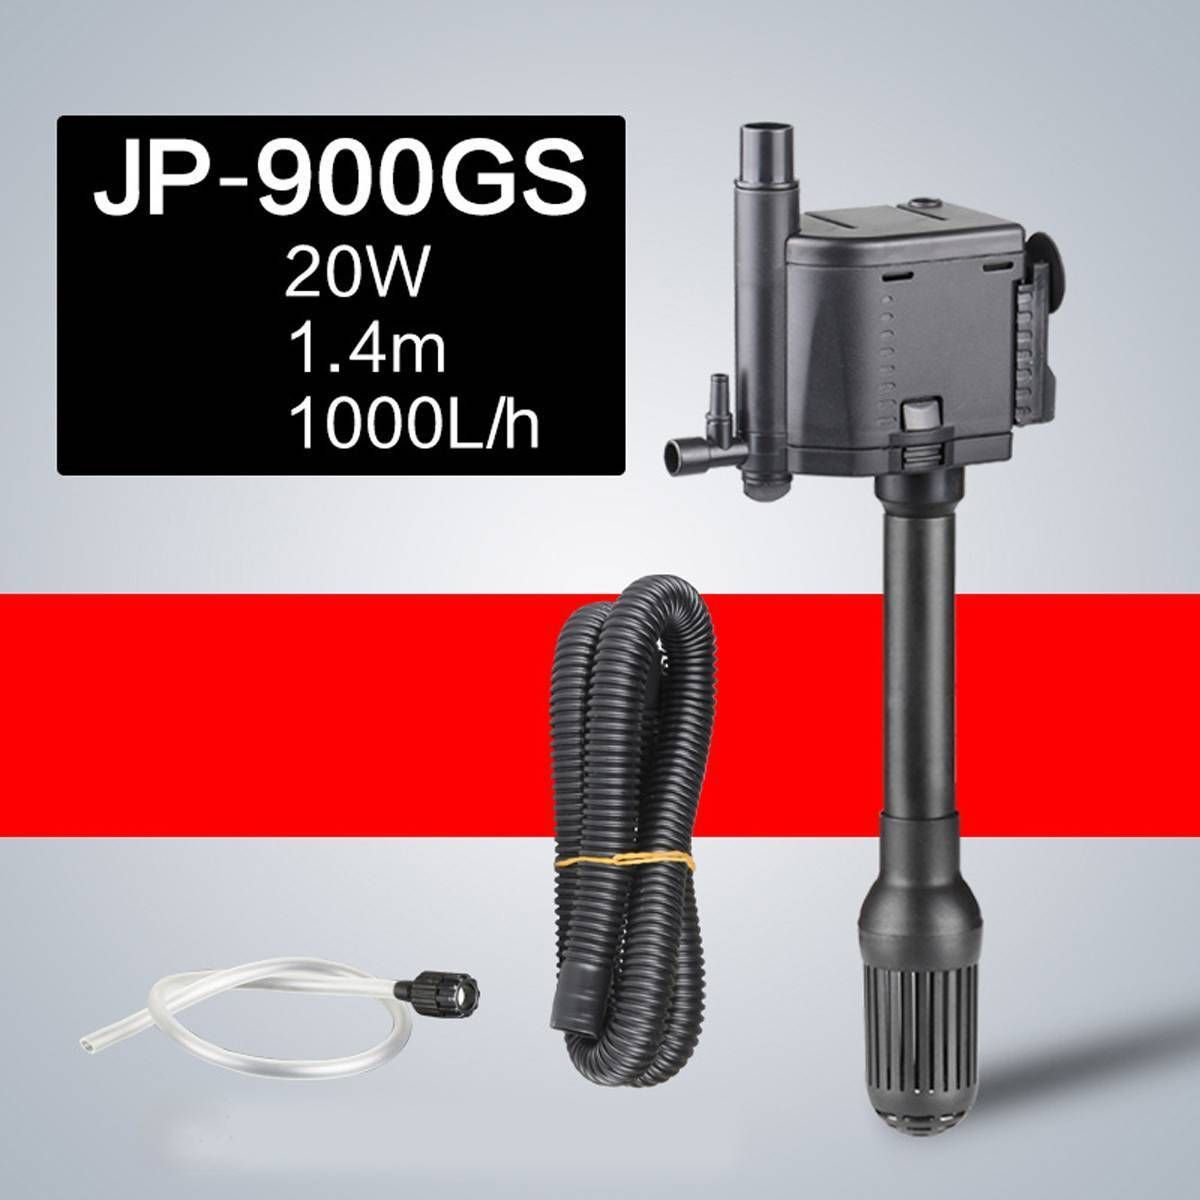 Jp-900gs